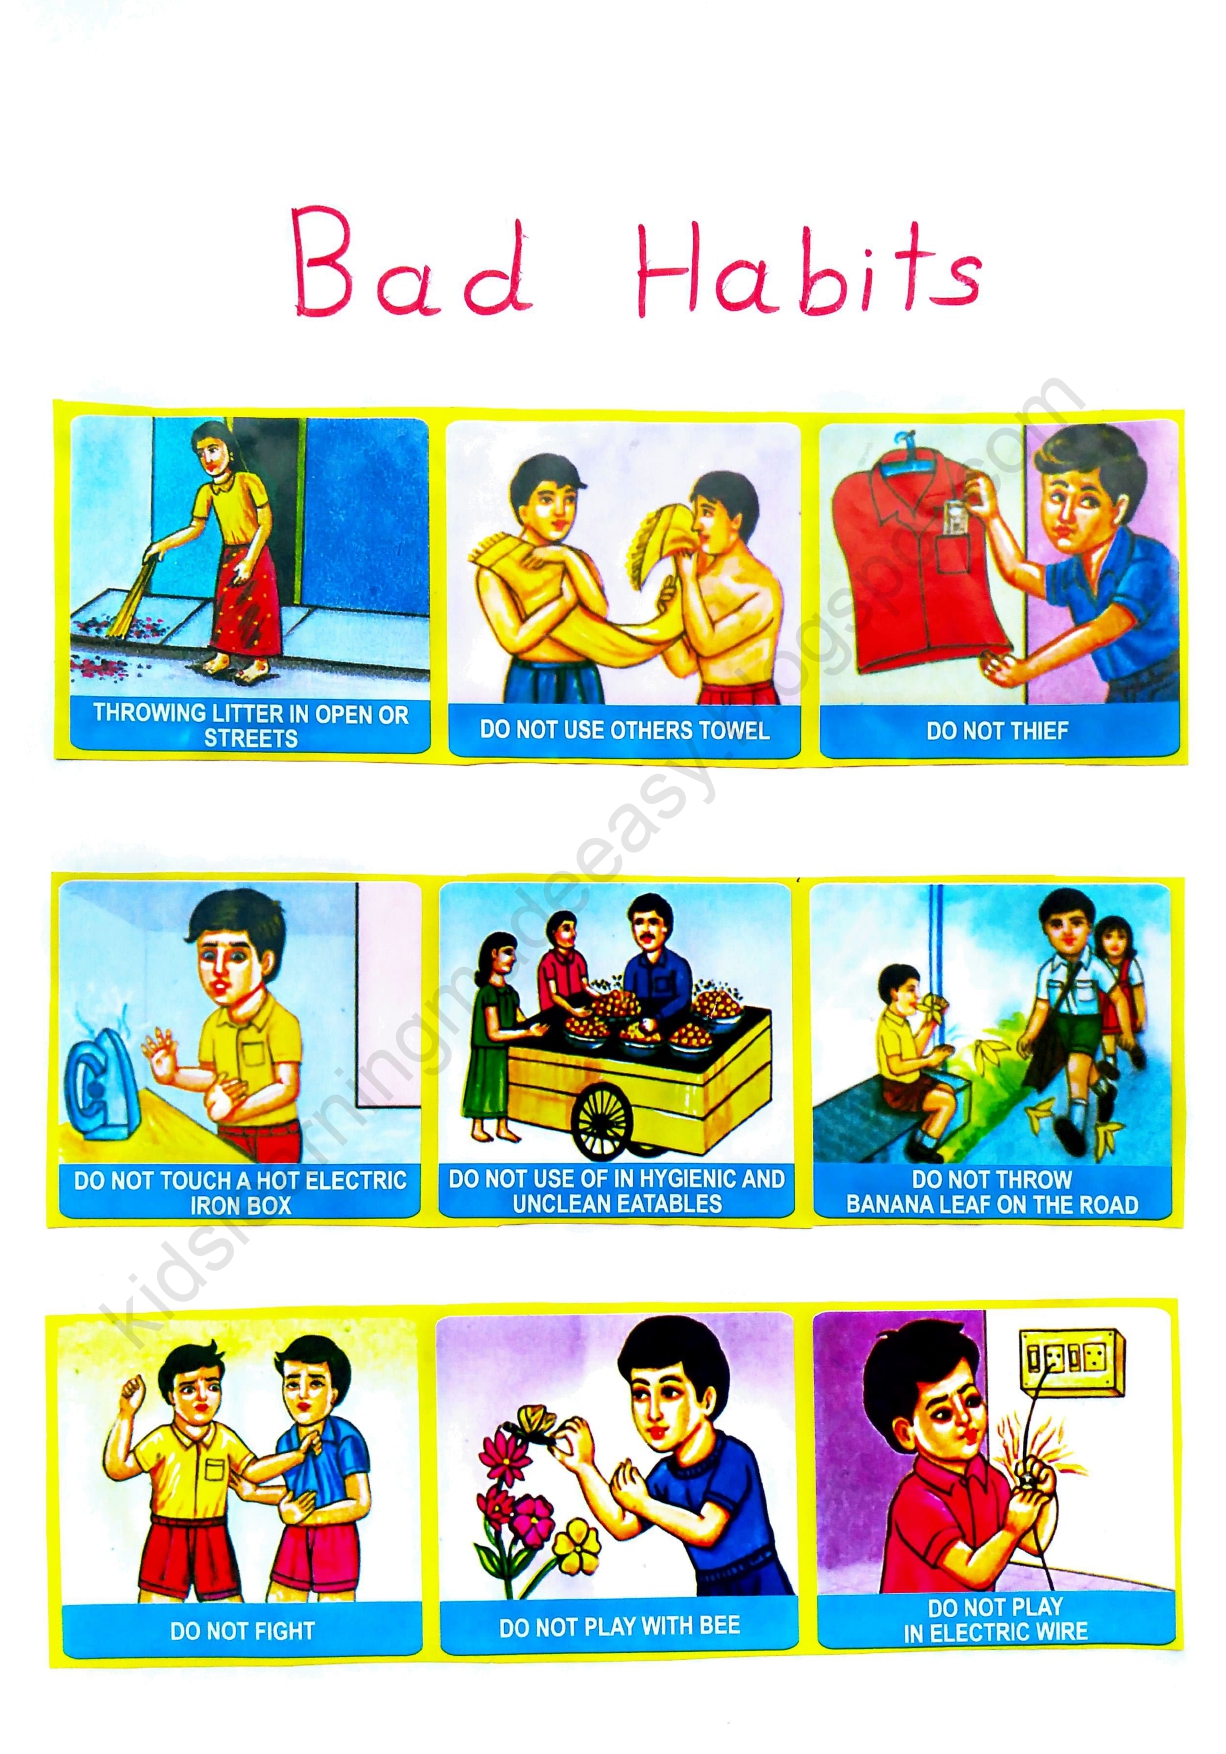 GOOD HABITS AN BAD HABITS